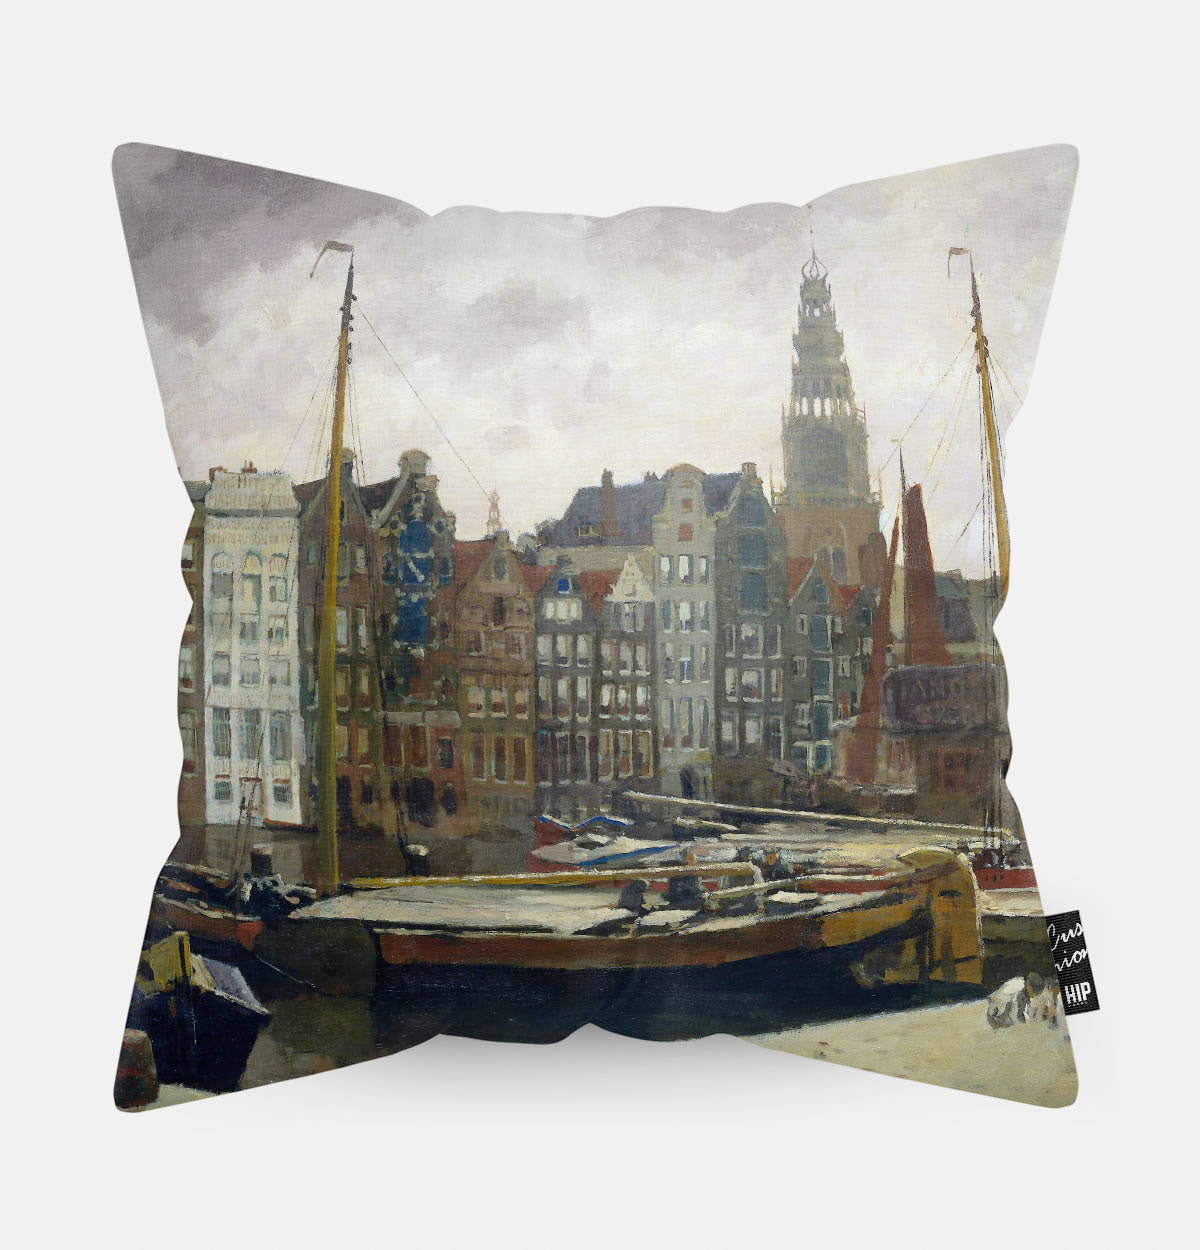 Kussen met schildering van damrak in Amsterdam erop afgebeeld.